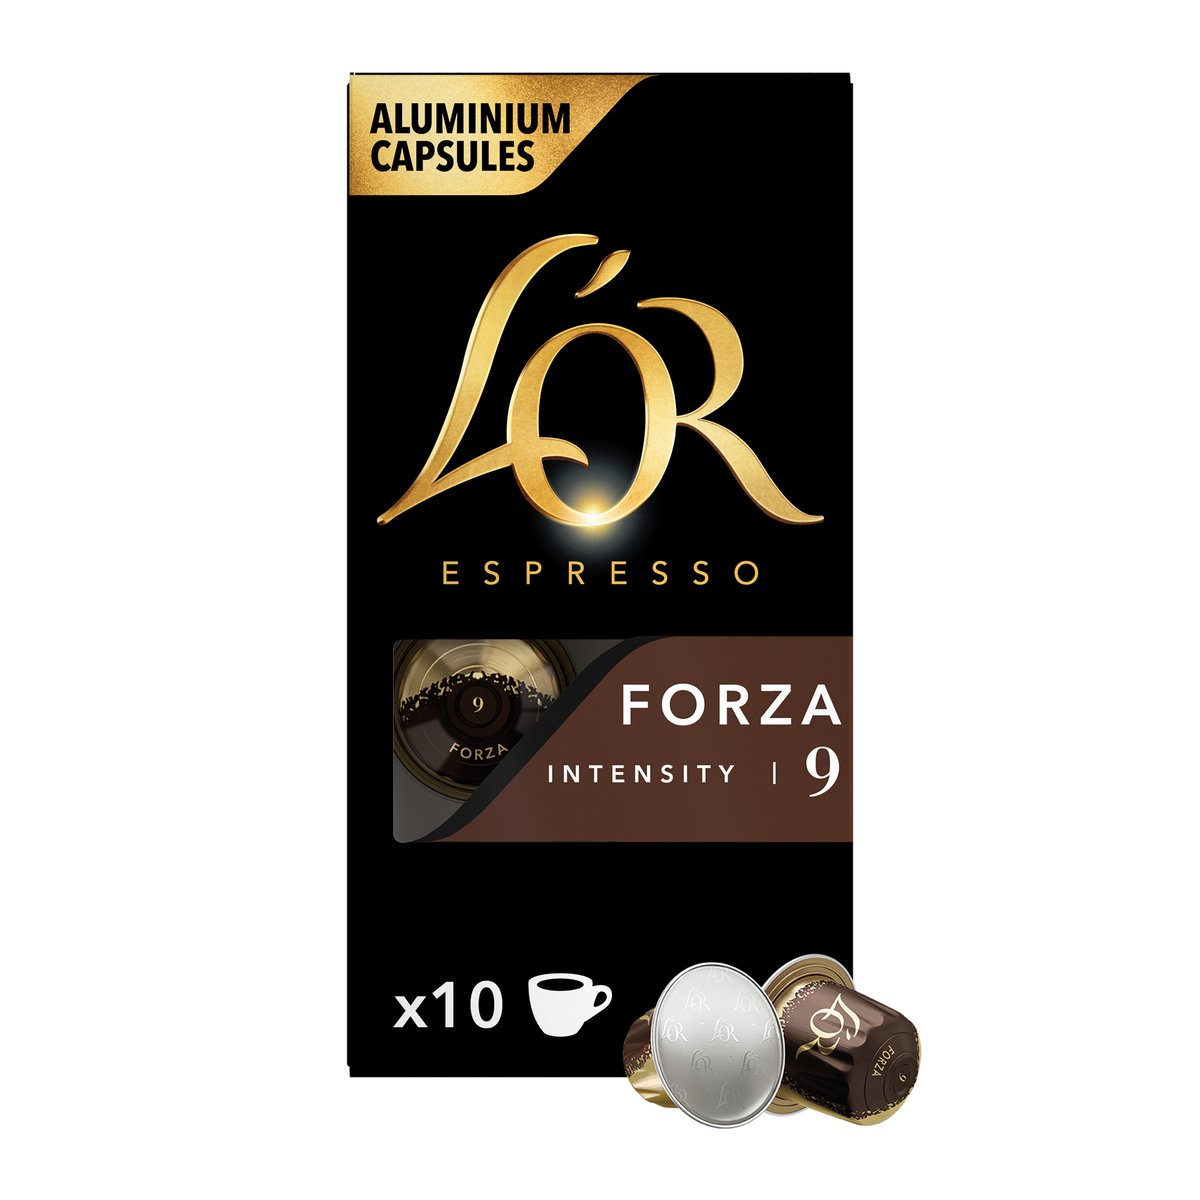 لور اسبريسو فورزا كبسولات قهوة ألومنيوم كثافة 9 عبوة توفيرية  10 حبات